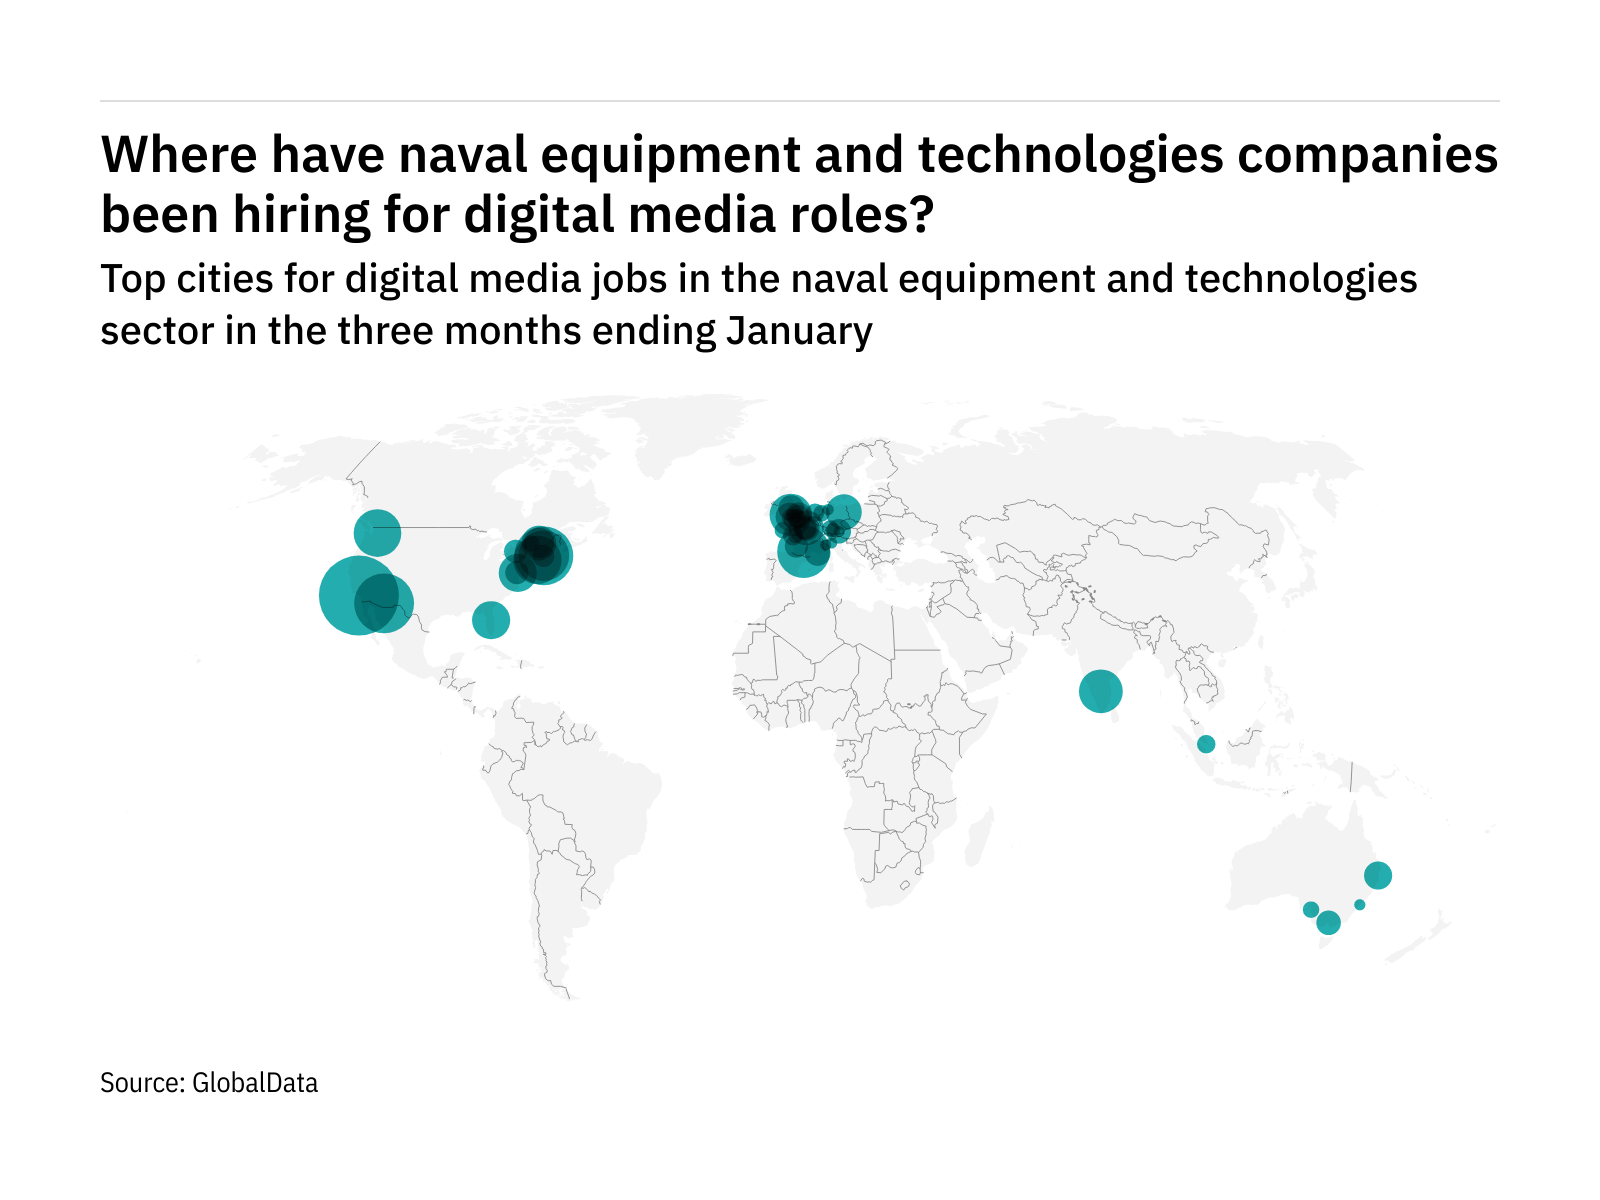 Europe is seeing a hiring boom in naval industry digital media roles